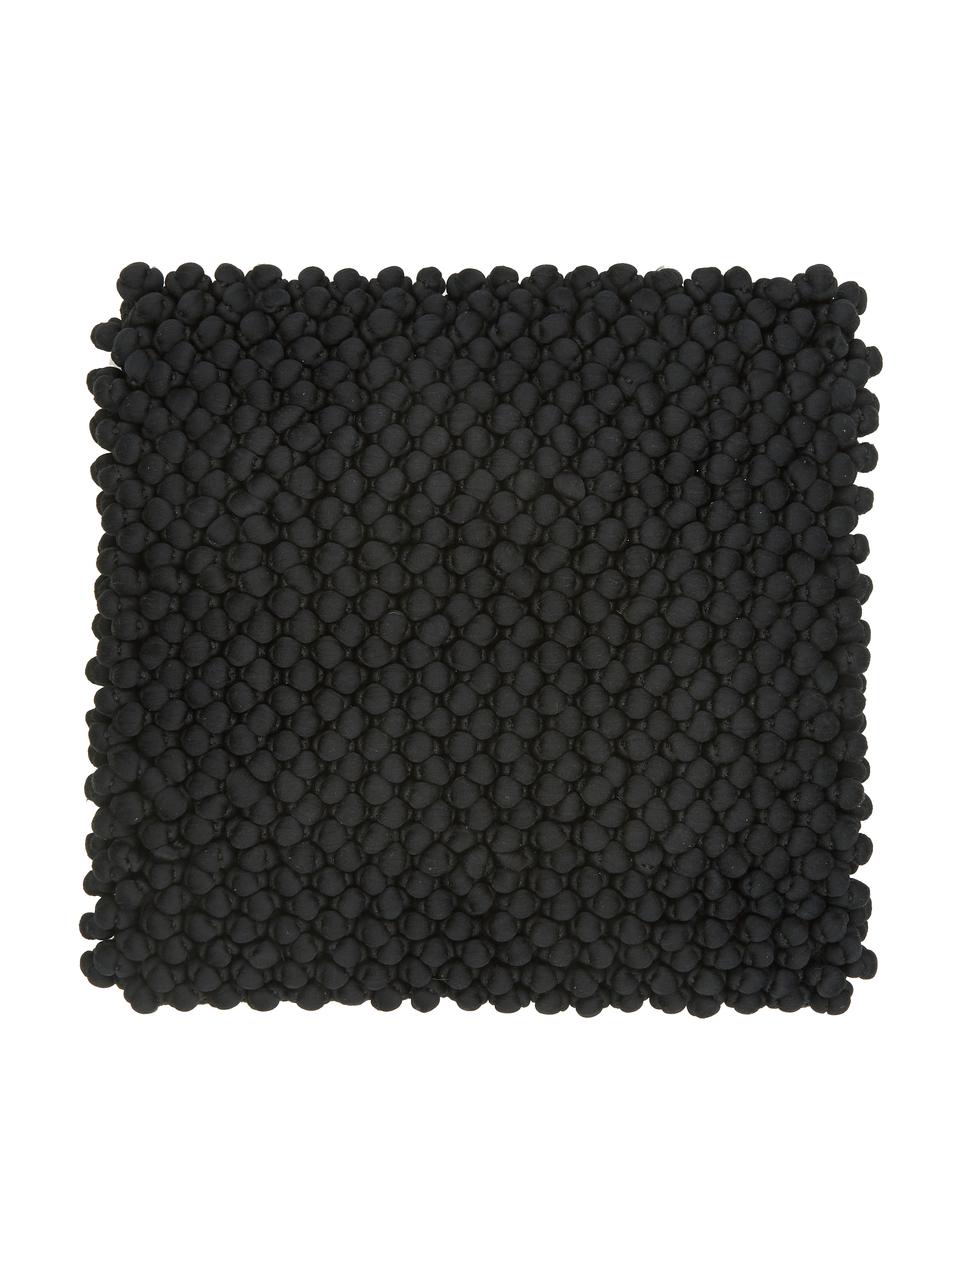 Federa arredo color nero Iona, Retro: 100% cotone, Nero, Larg. 45 x Lung. 45 cm